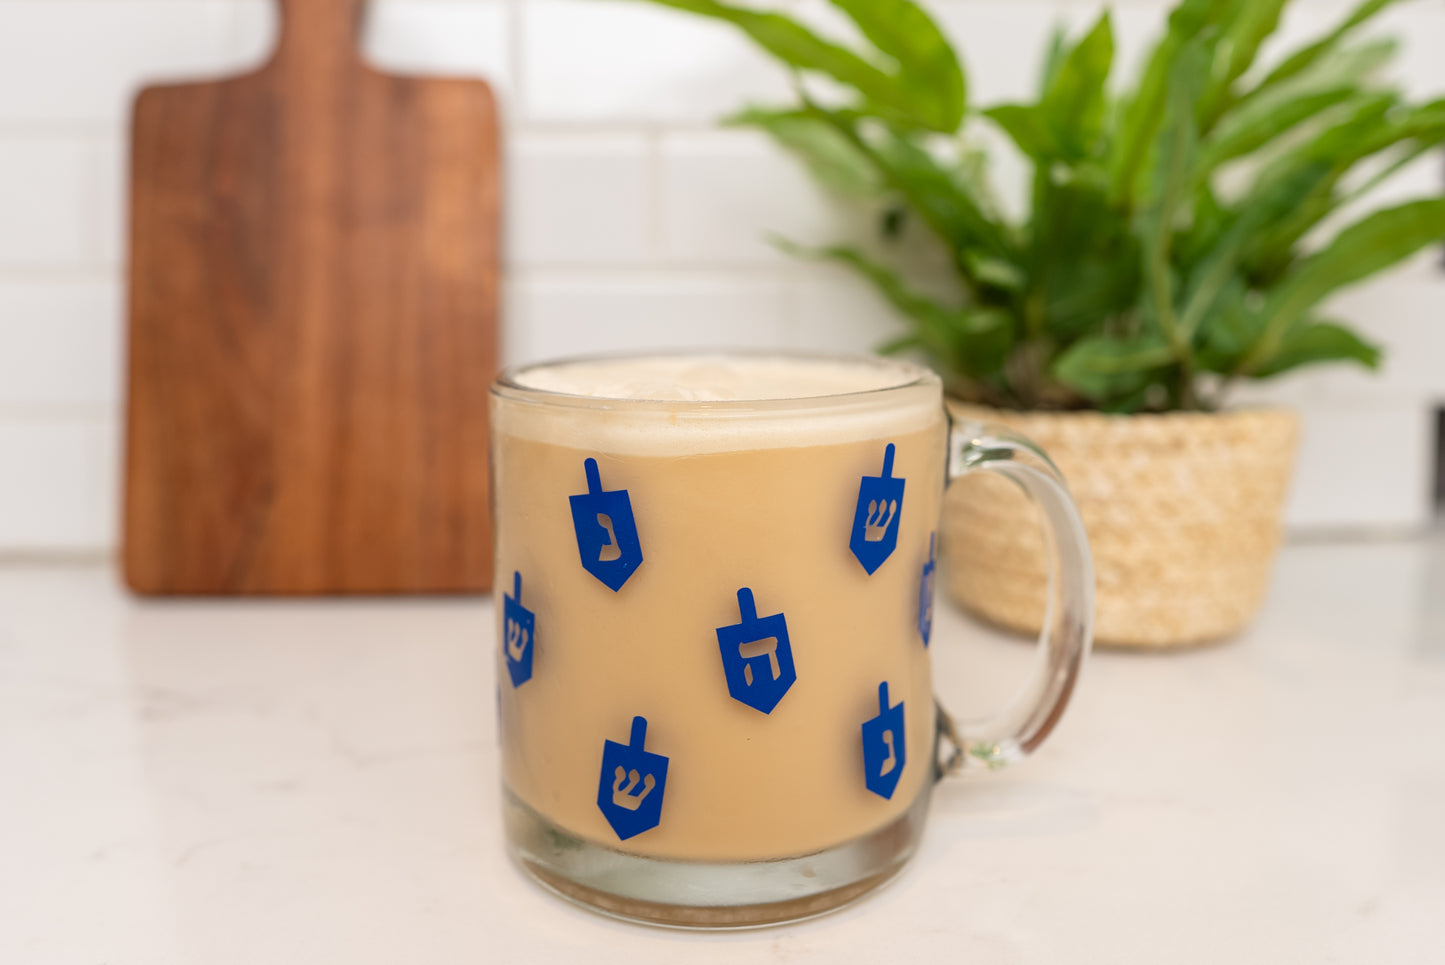 Dreidel Hanukkah Mug, Hanukkah Coffee Mug, Hanukkah Coffee Cup, Glass Cup, Clear Glass Mug, Dreidel Dreidel Dreidel Mug, Gifts for Hanukkah, Chanukah Mug, Jewish Holiday Decor